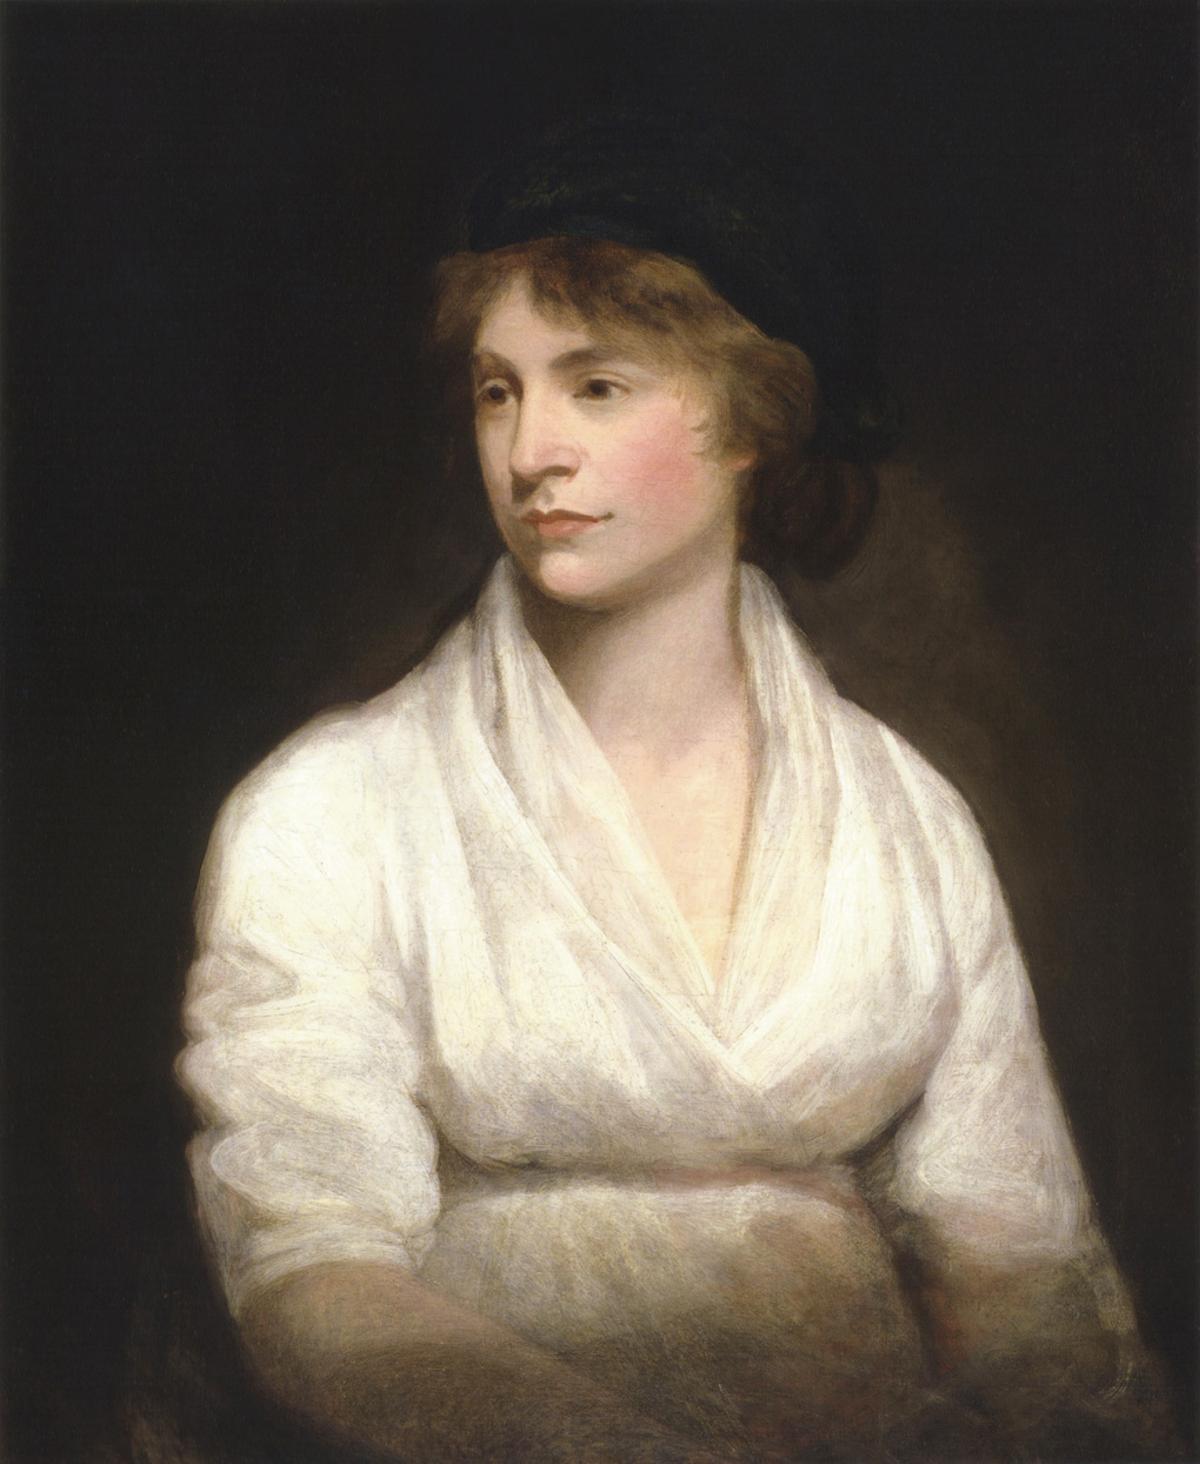 Mary Wollstonecraft (1759-1797). Una de las primeras escritoras profesionales, algo impensable para las mujeres del siglo XVIII. Su obra Vindicación de los derechos de la mujer es el primer texto reconocido de la filosofía feminista.